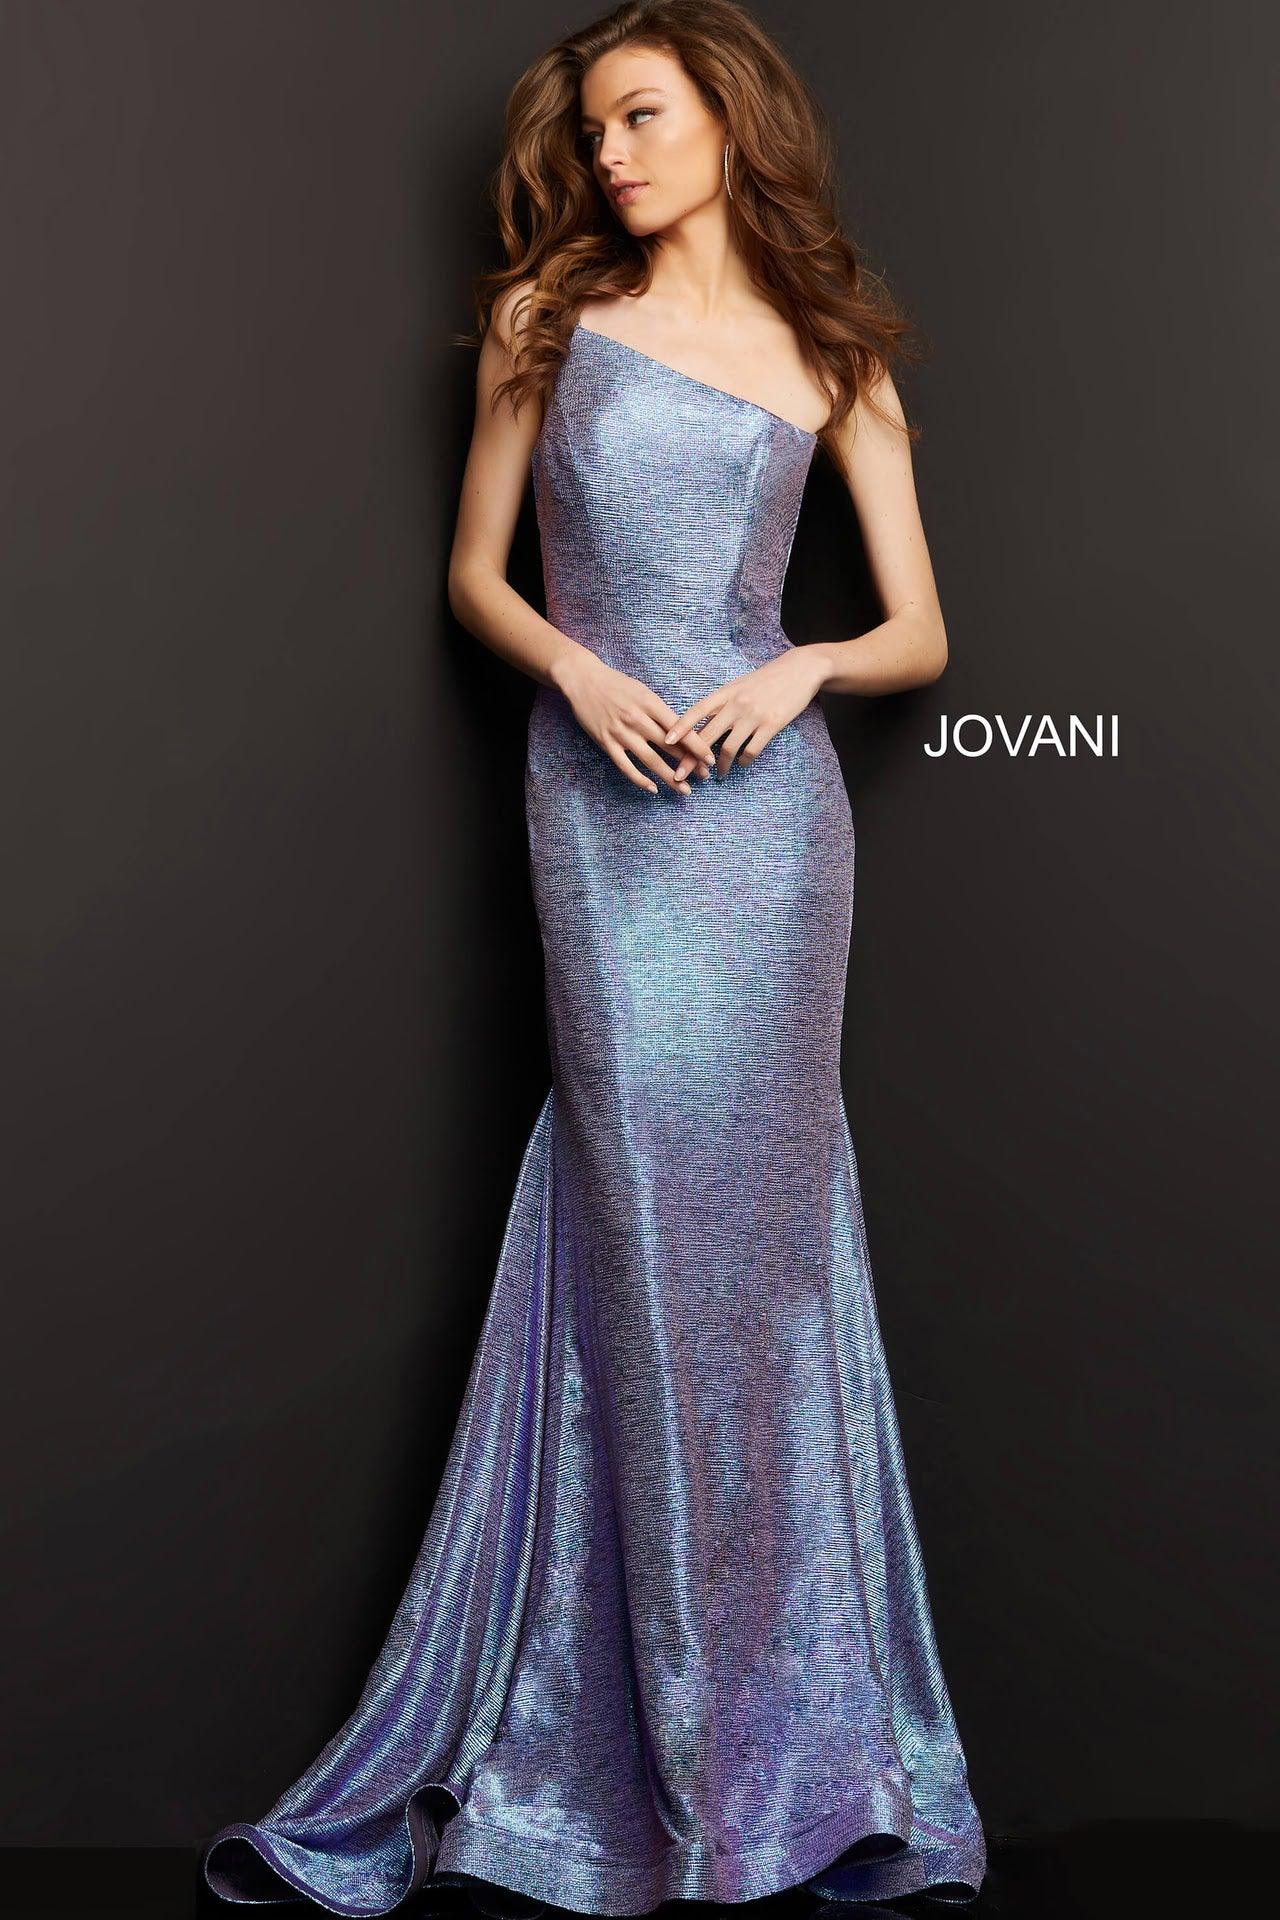 Jovani One Shoulder Long Prom Dress 03326 - The Dress Outlet